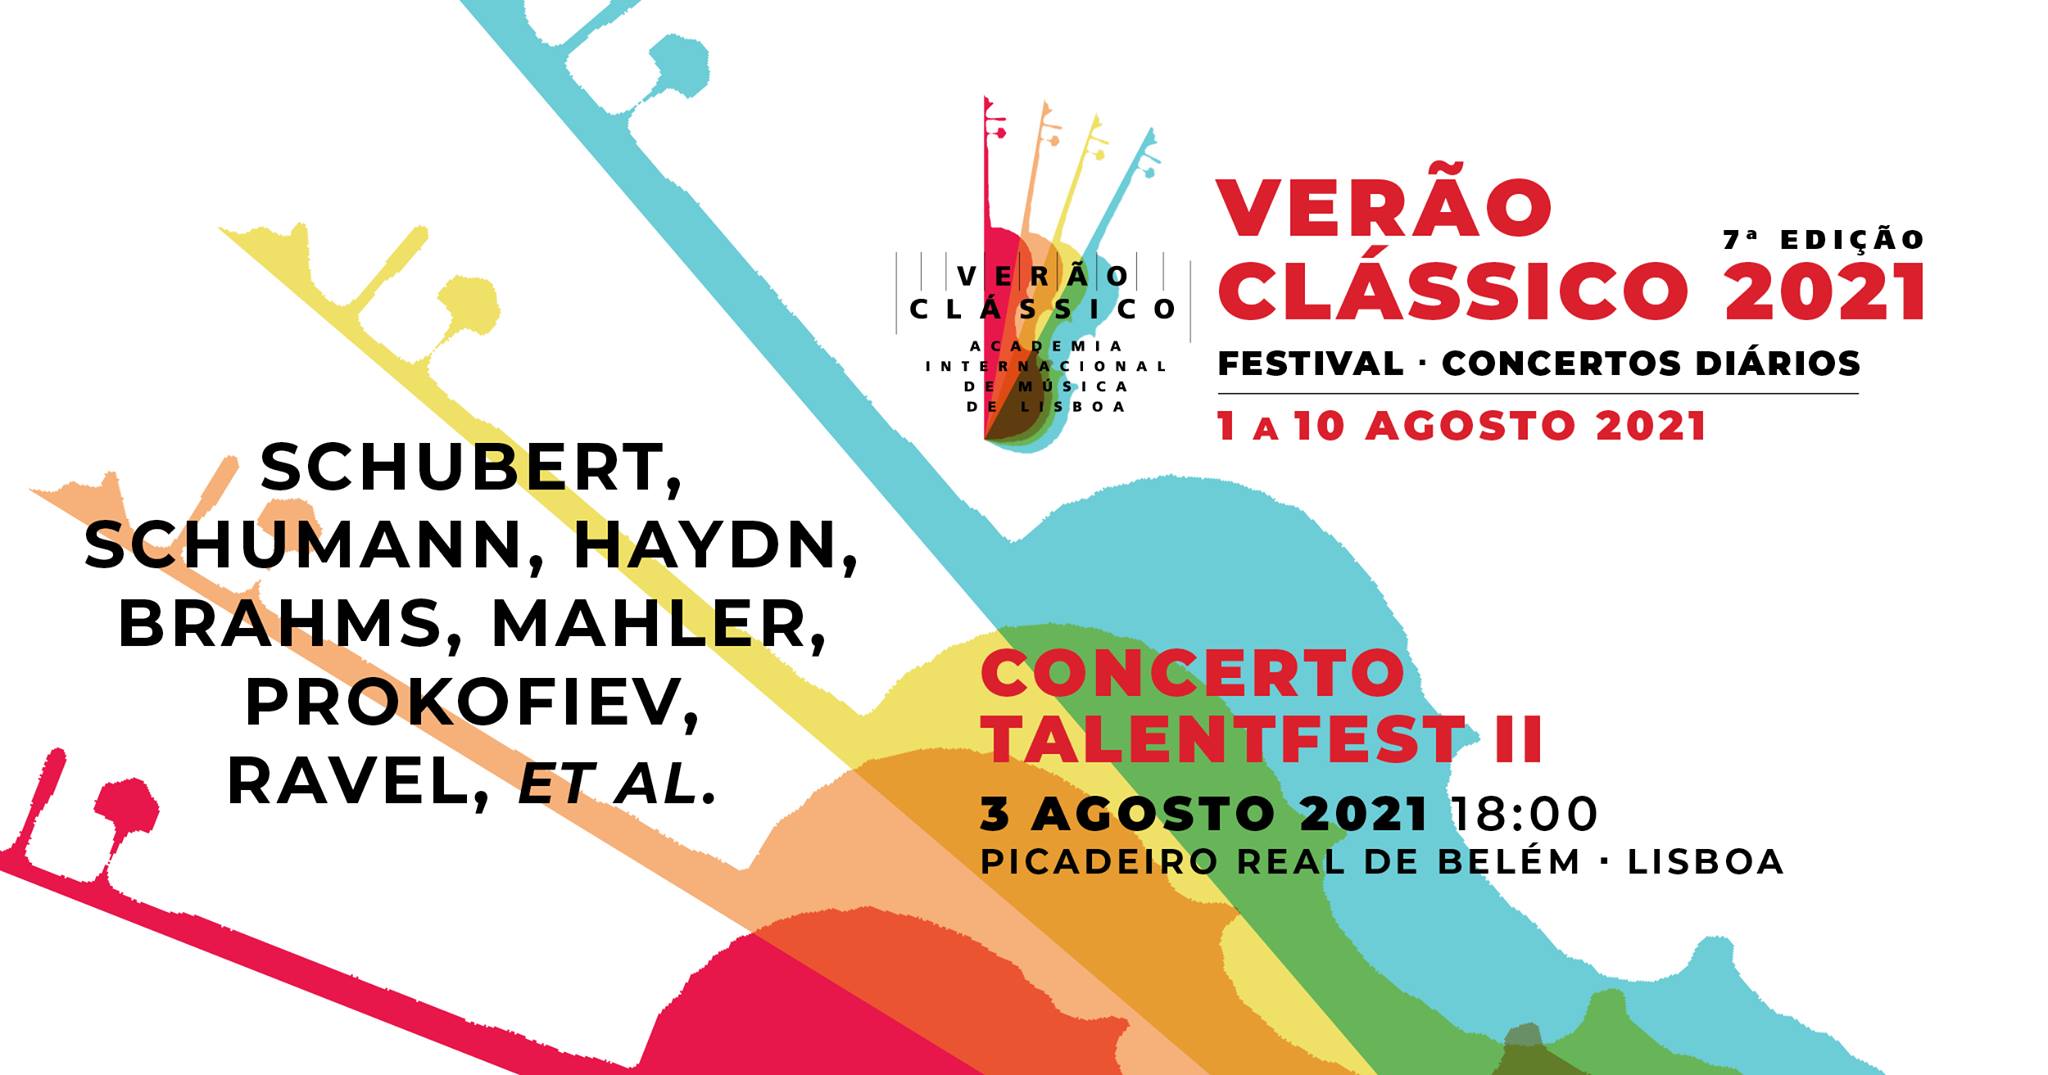 Concerto TalentFest II - VERÃO CLÁSSICO 2021